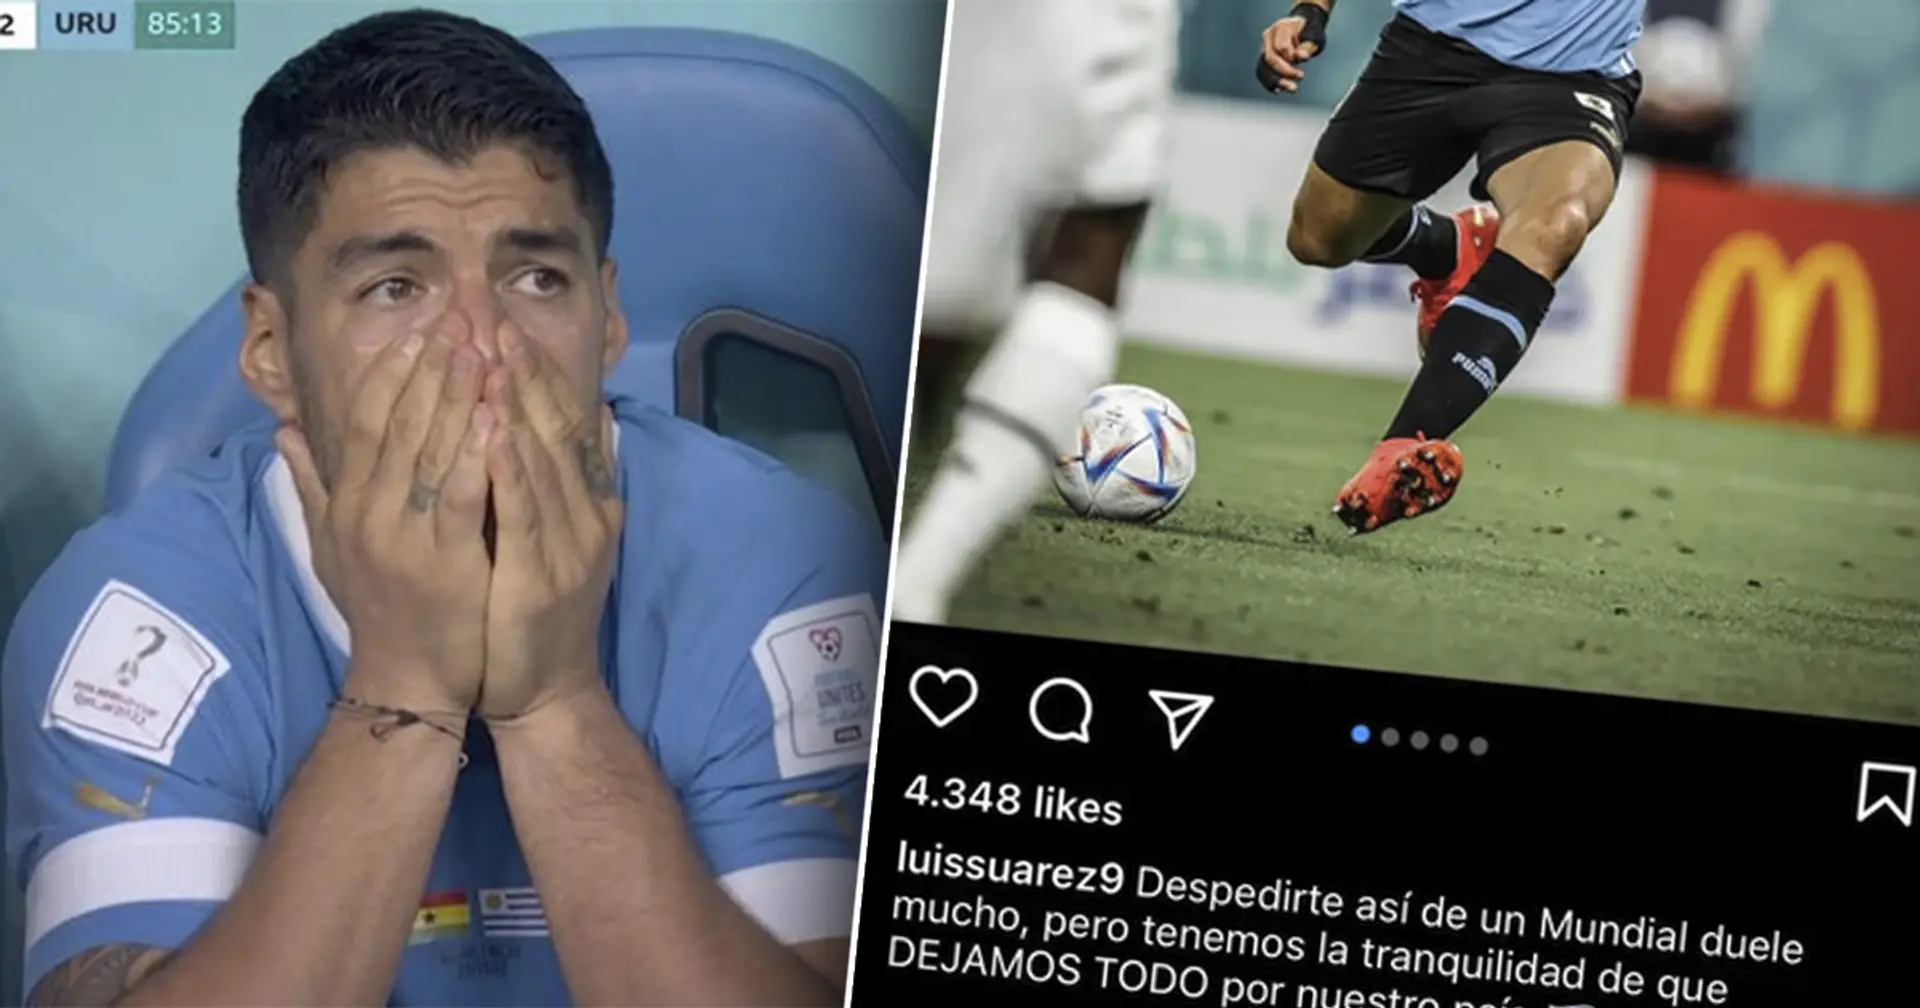 "Nous ne sommes pas respectés": Luis Suarez envoie un message émouvant après l'élimination en Coupe du monde